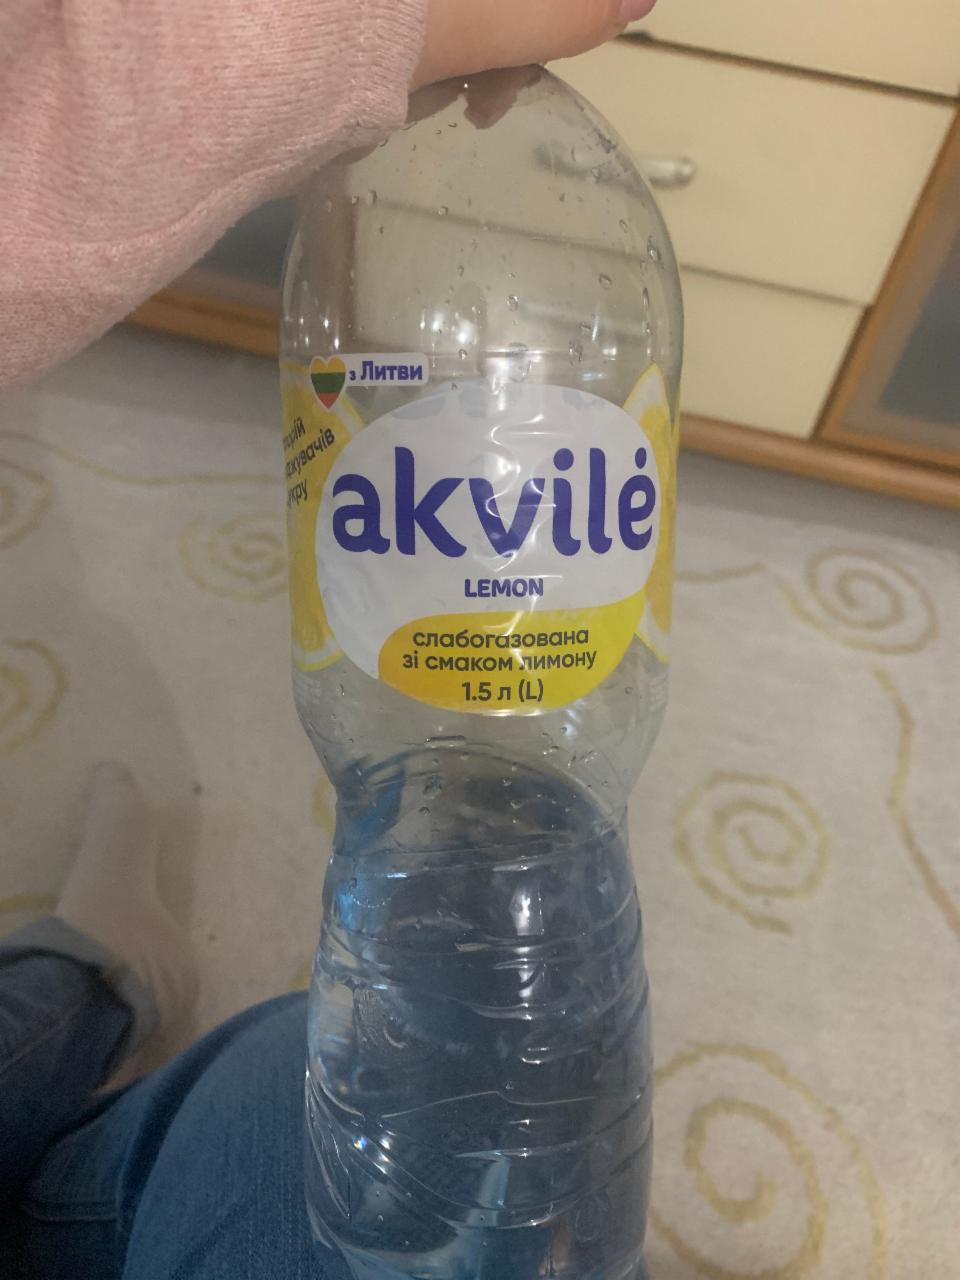 Фото - вода со вкуосм лимона Akvile